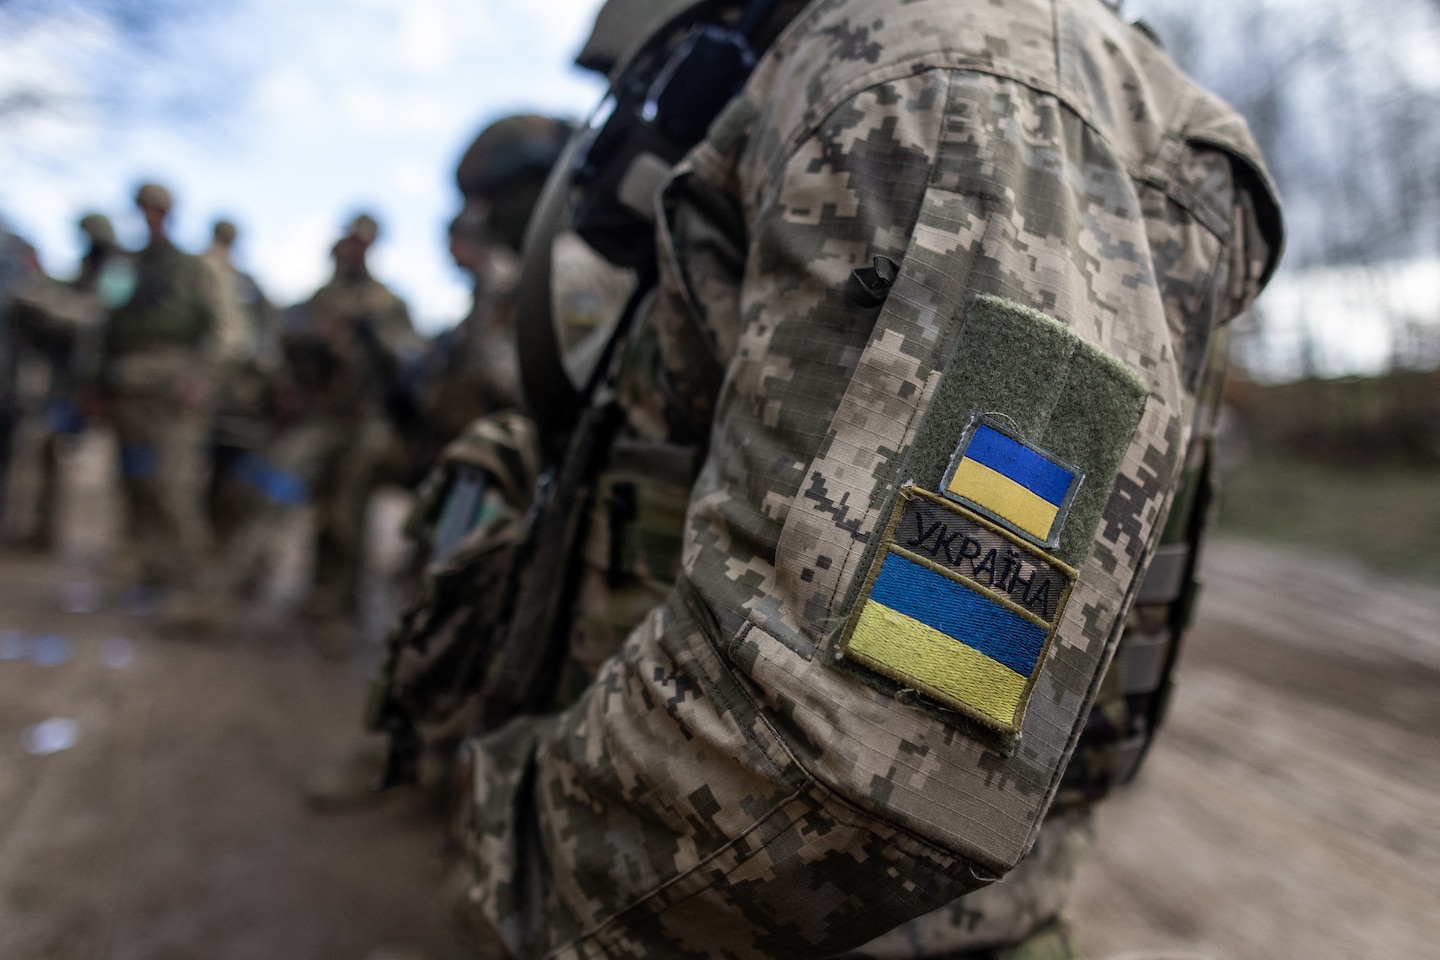 Nu de Amerikaanse hulp wordt hervat, zal Oekraïne proberen zichzelf uit de problemen te halen